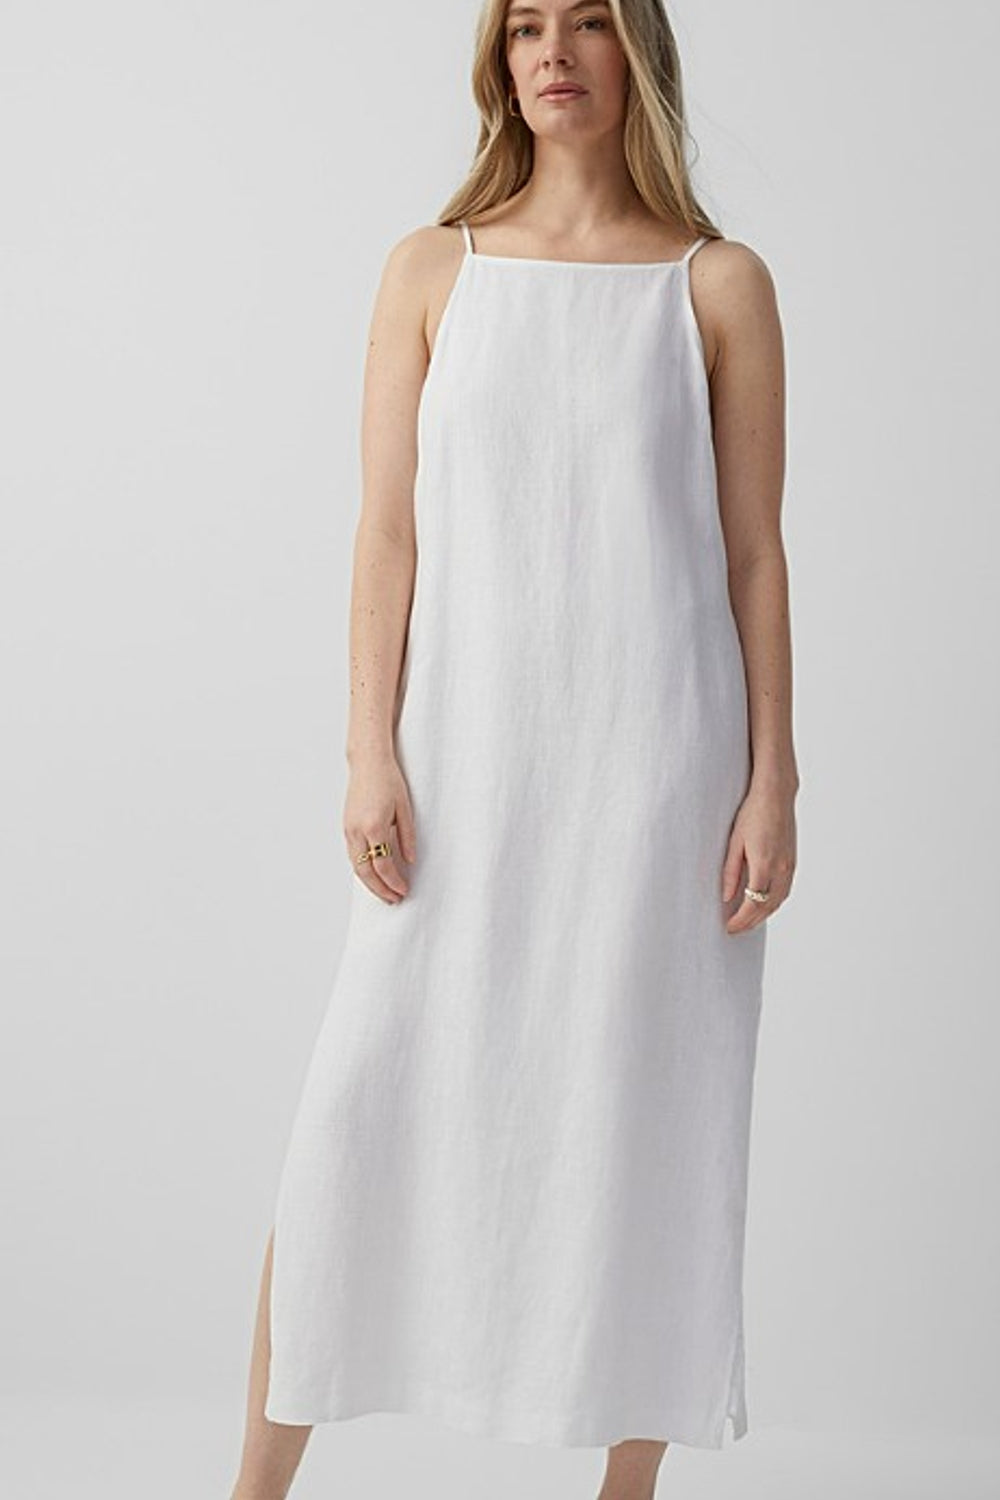 Gossamer White Dress